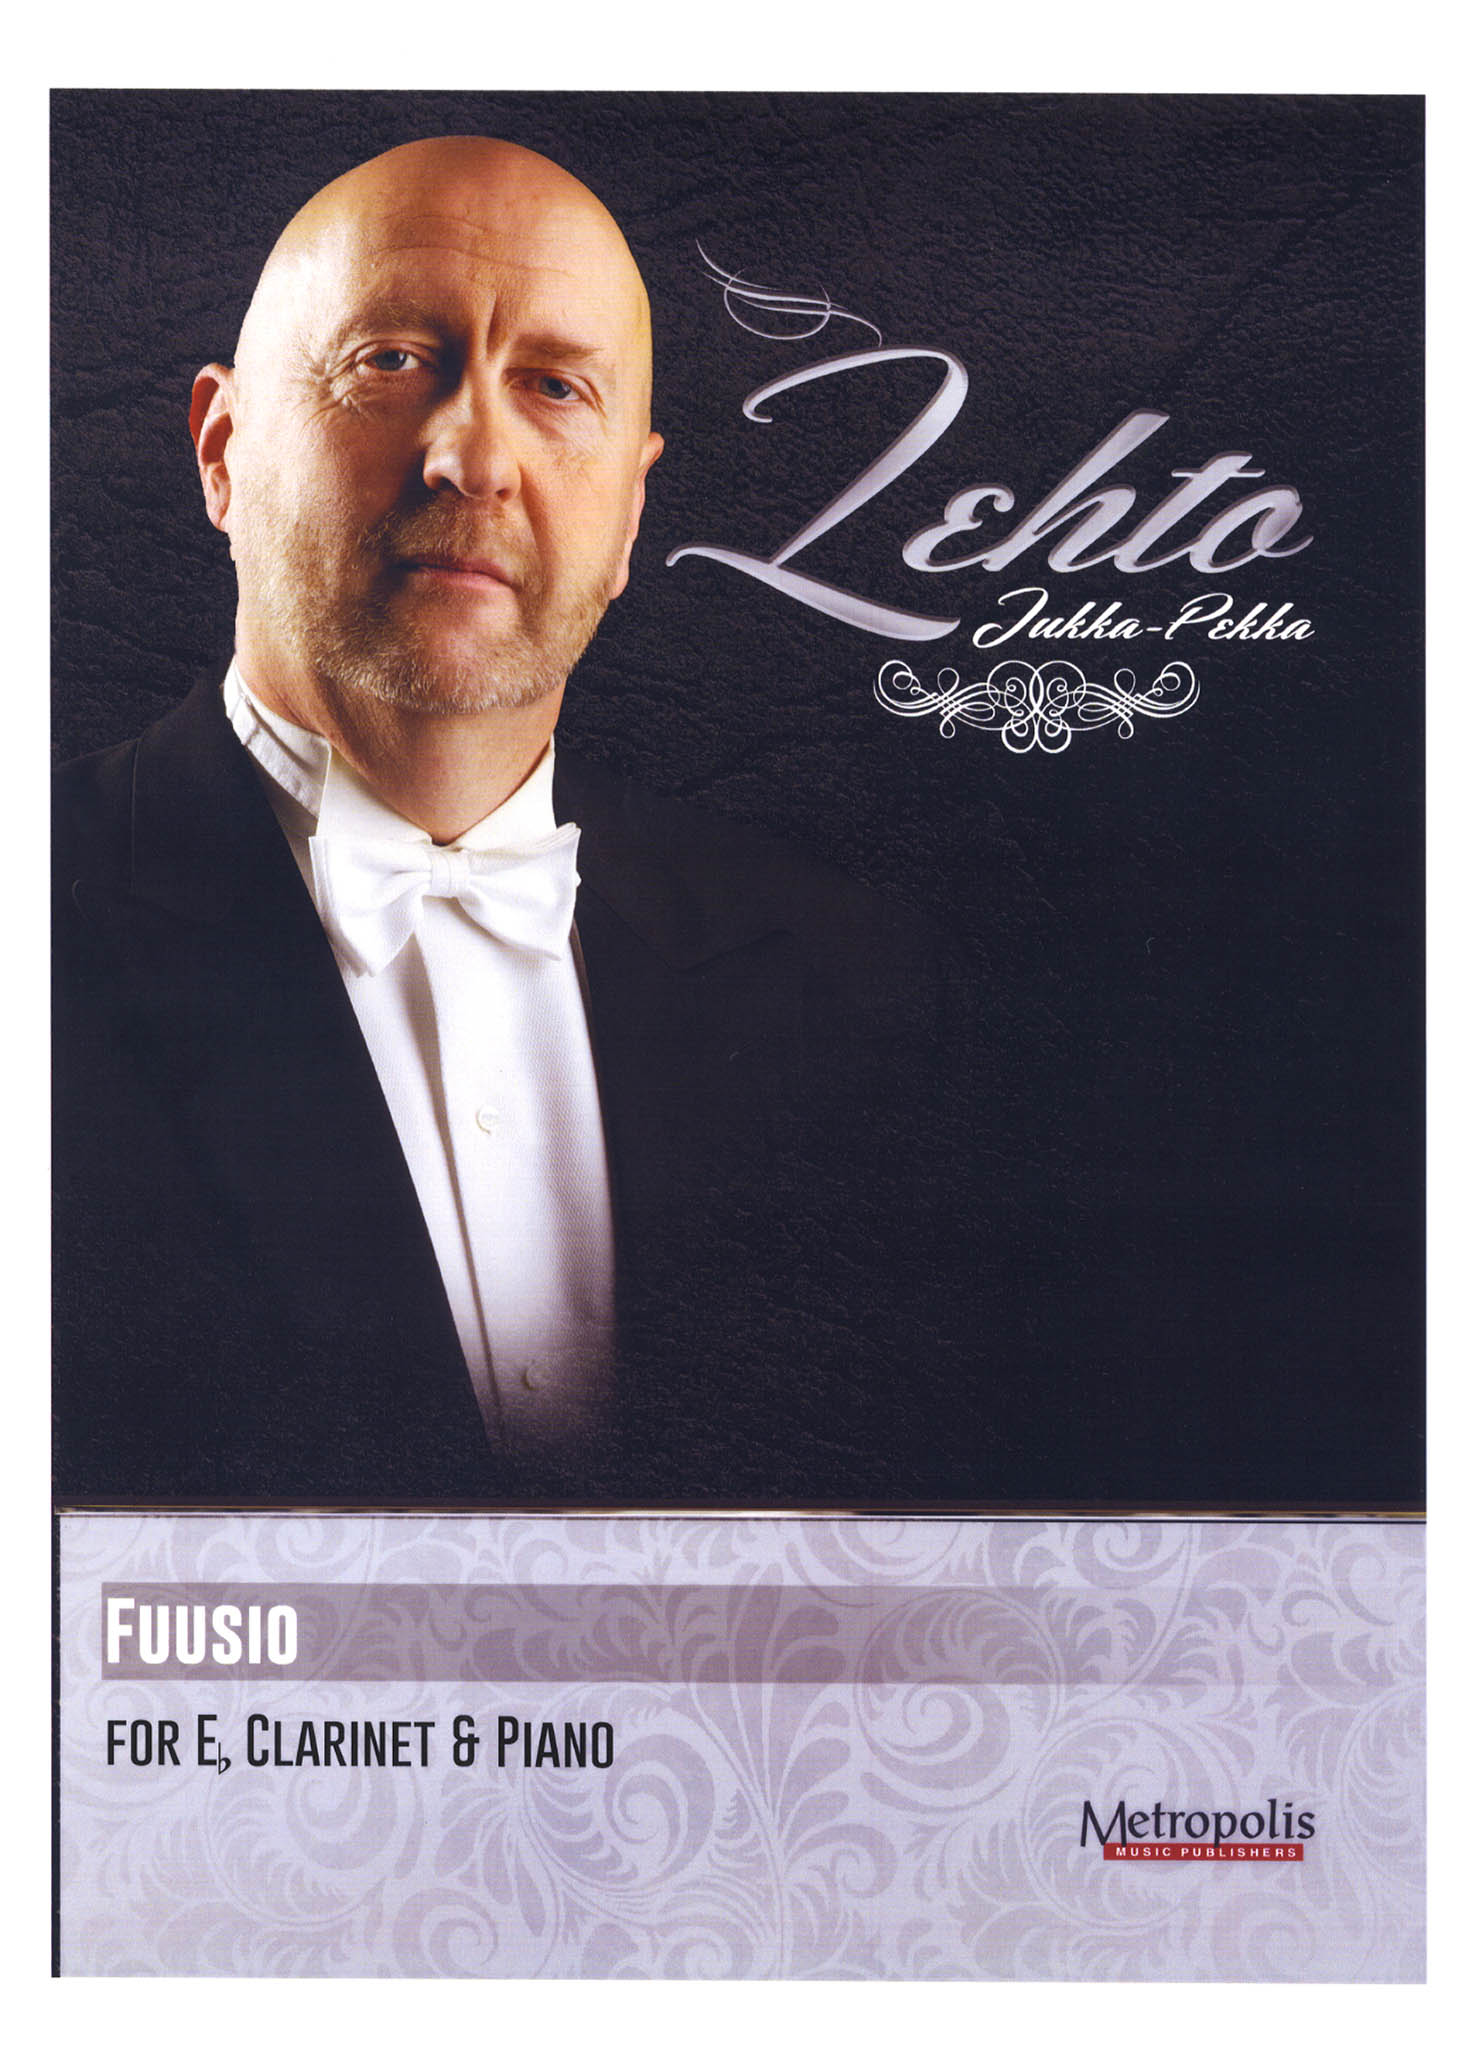 Jukka-Pekka Lehto Fuusio E-flat clarinet & piano cover